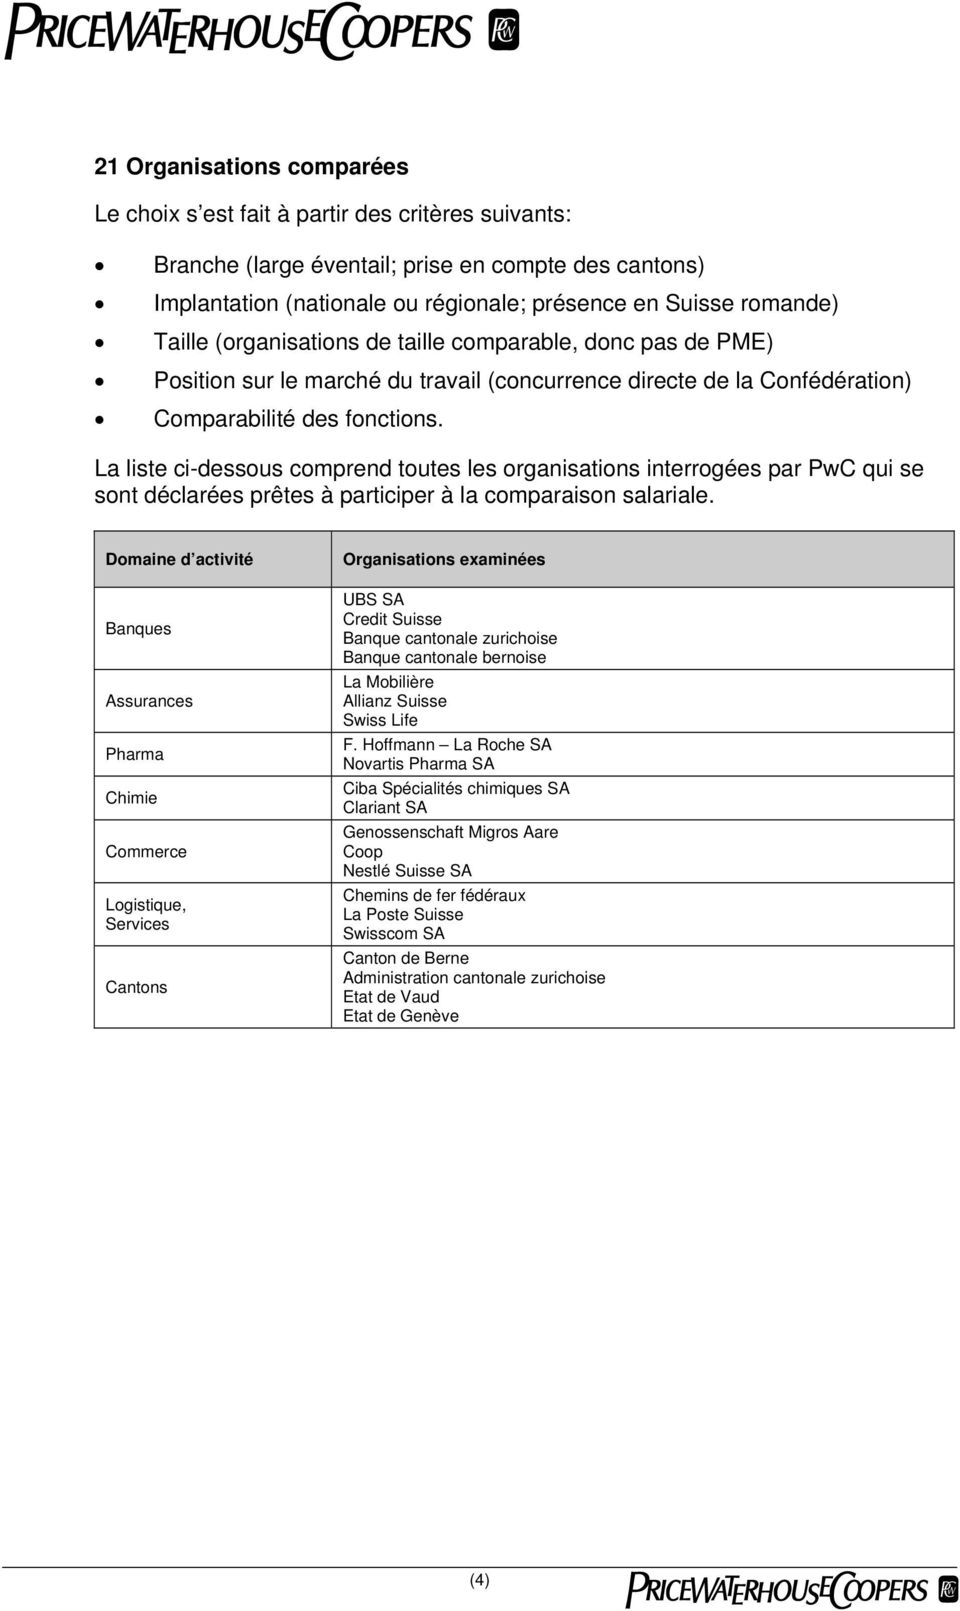 La liste ci-dessous comprend toutes les organisations interrogées par PwC qui se sont déclarées prêtes à participer à la comparaison salariale.